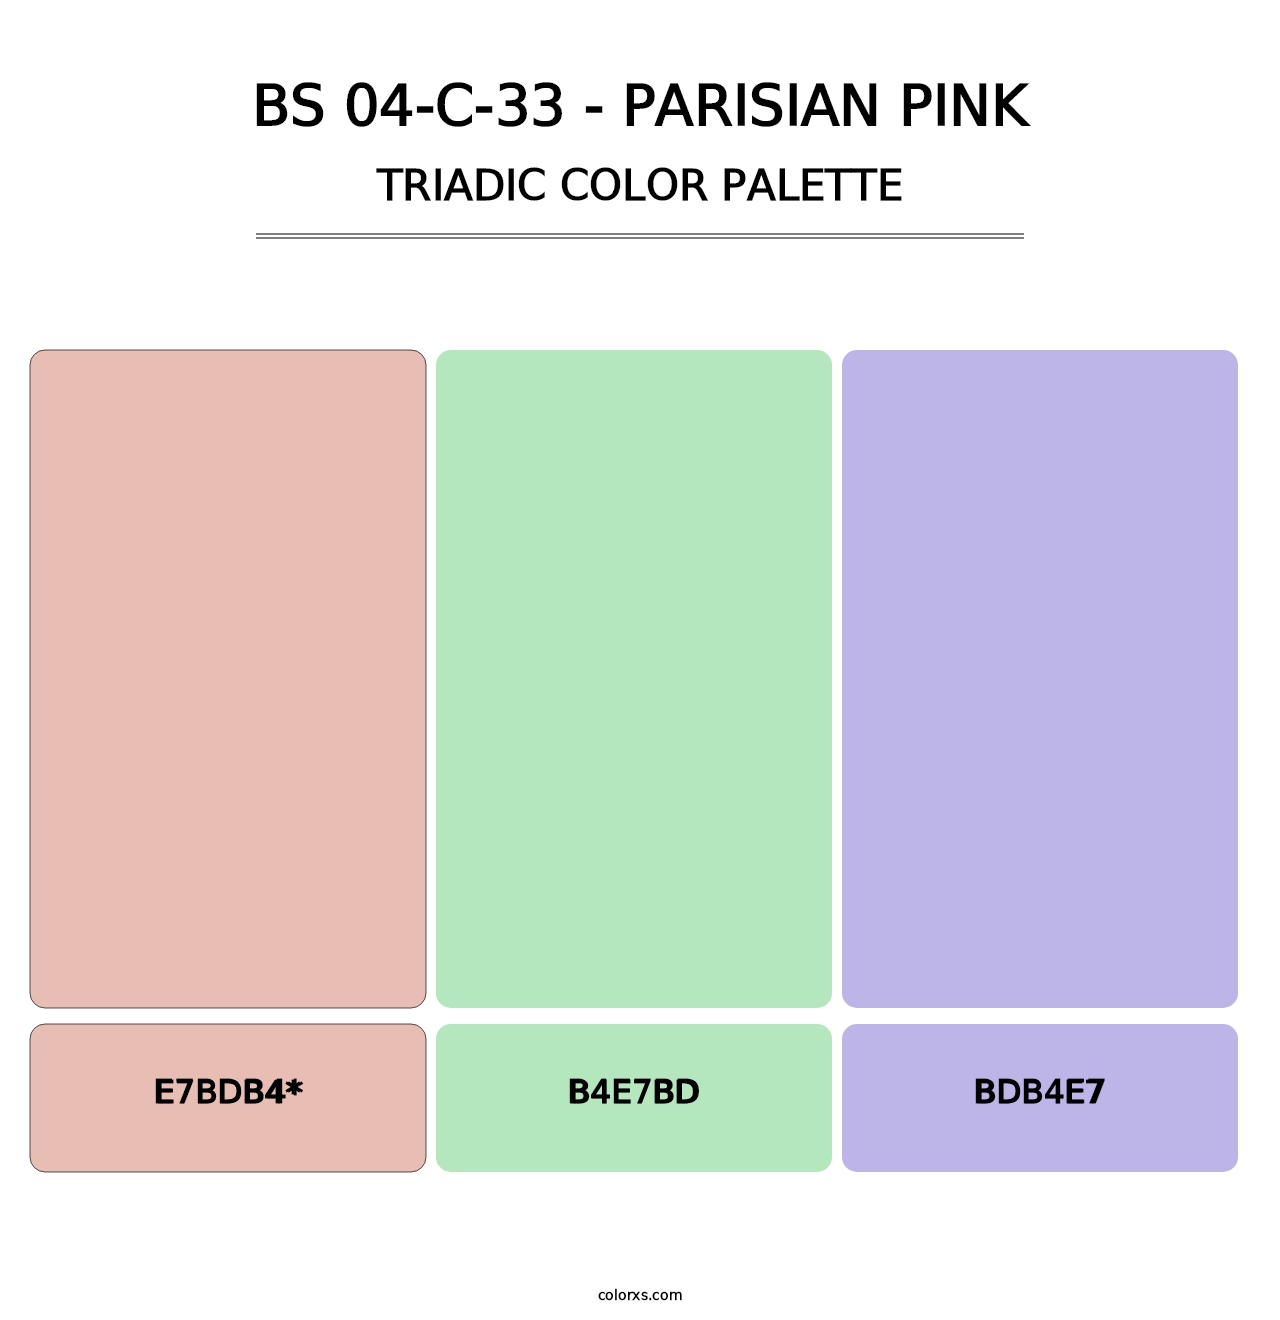 BS 04-C-33 - Parisian Pink - Triadic Color Palette